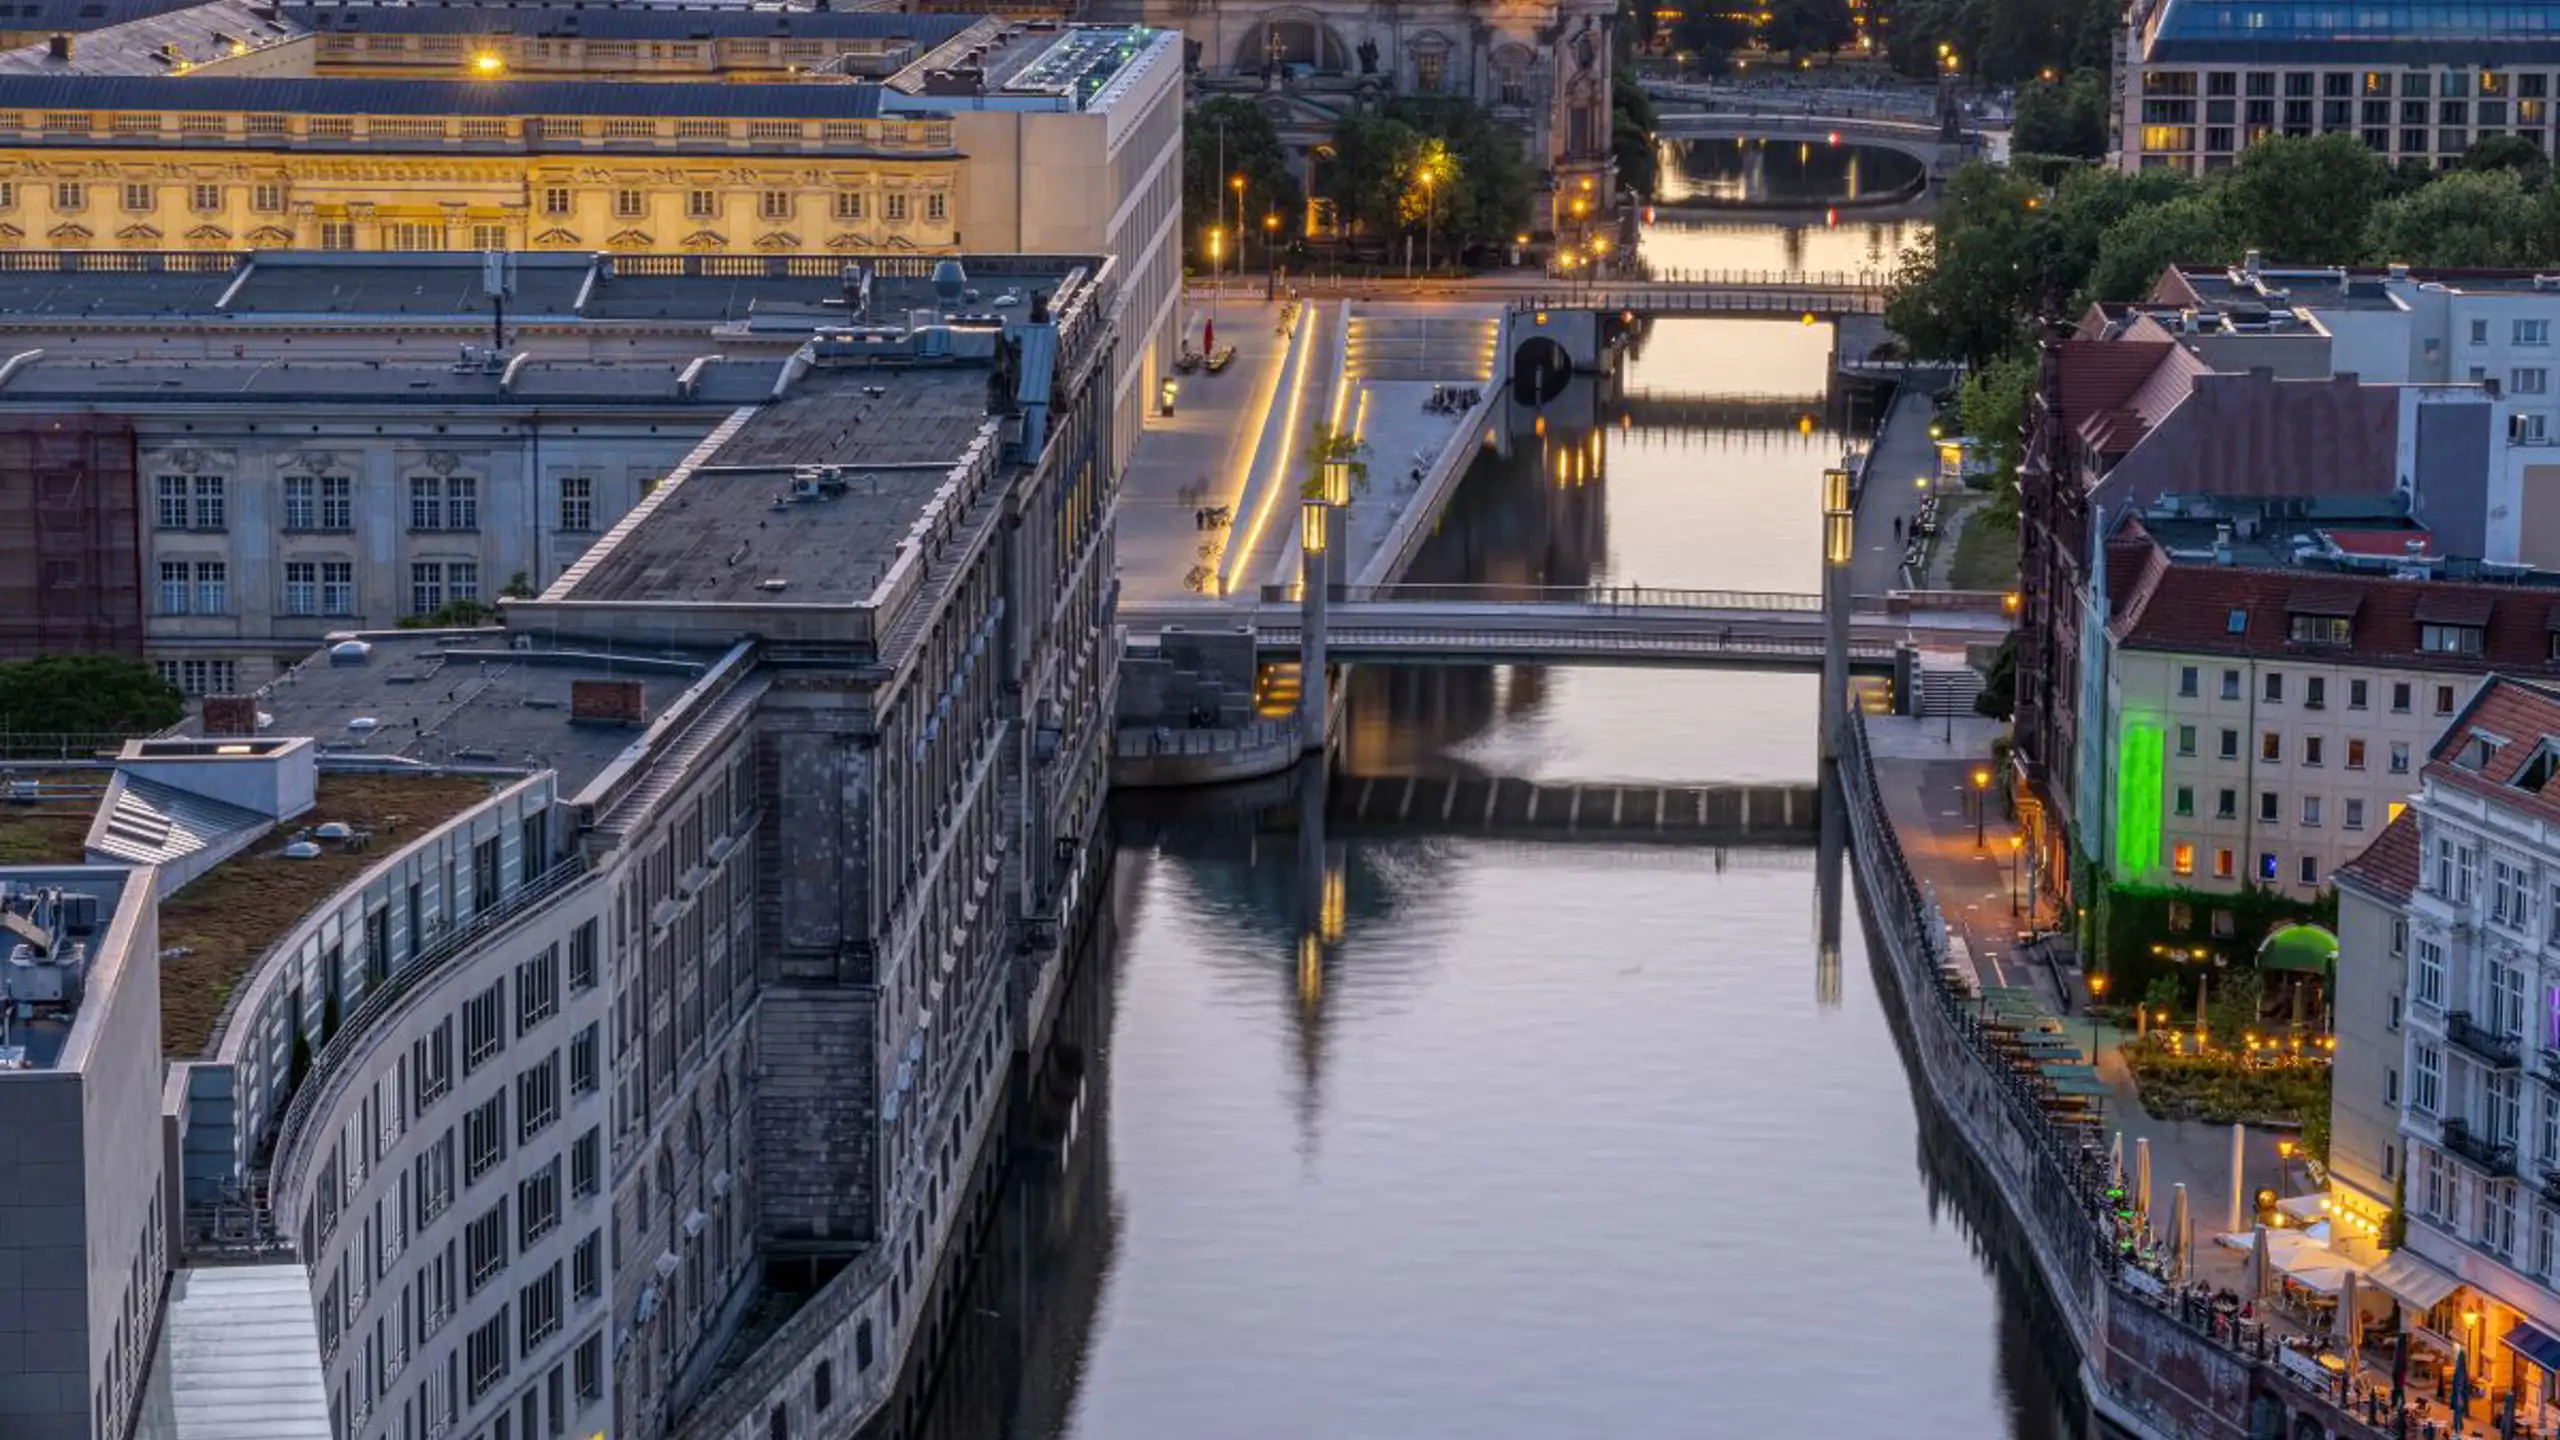 Sunset At The River Spree In Berlin 2023 11 27 04 55 11 Utc (1)